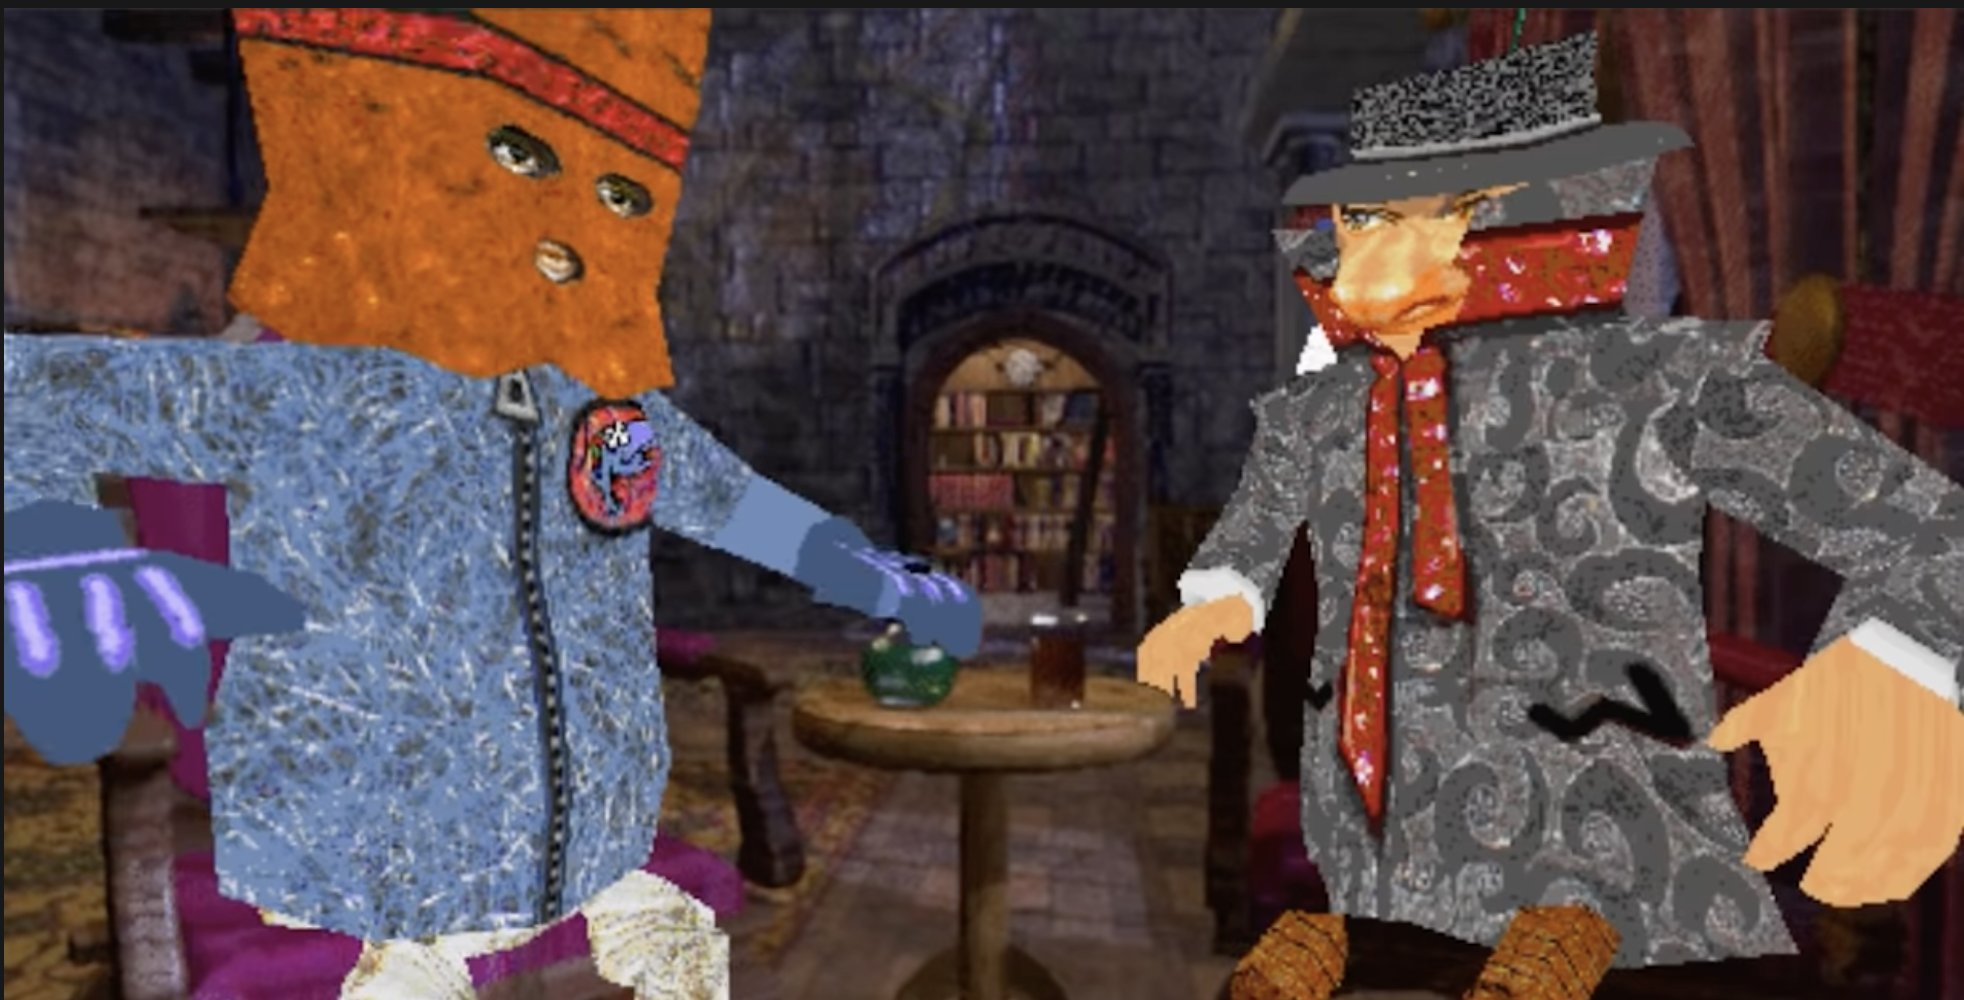 Captura do Microsoft 3D Creador de Películas onde se ven dúas personaxes. A da esquerda leva unha bolsa de papel na cabeza. A da dereita, un chapeu e colo alto que lle tapa todo agás os ollos.